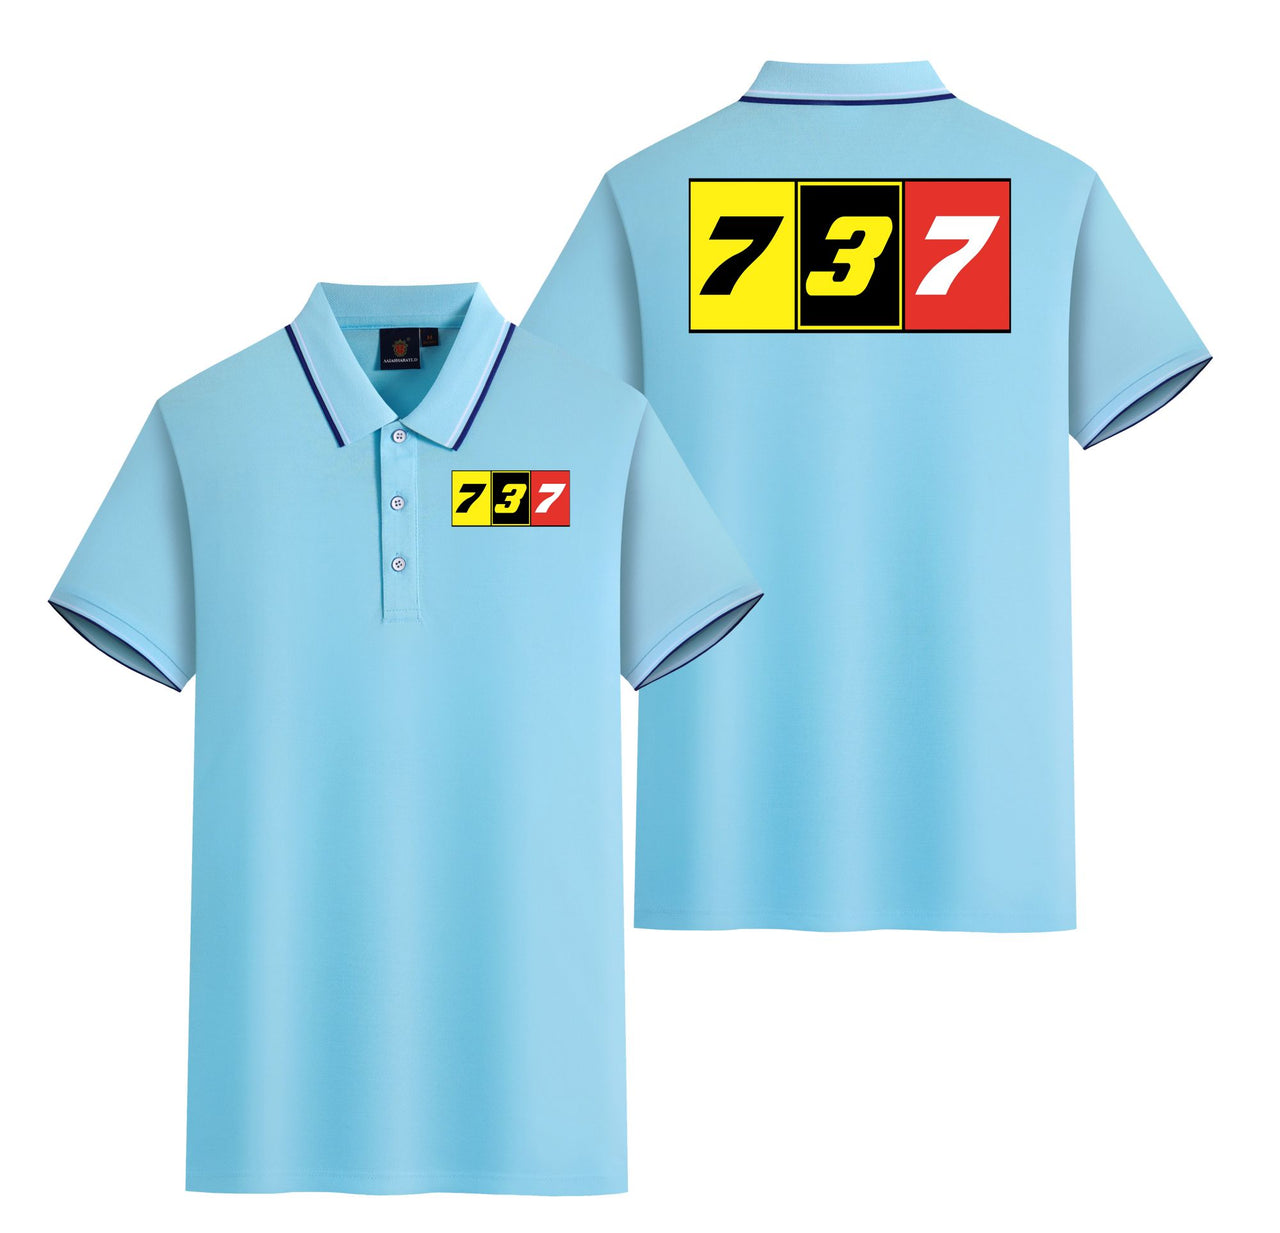 Flat Colourful 737 Designed Stylish Polo T-Shirts (Double-Side)